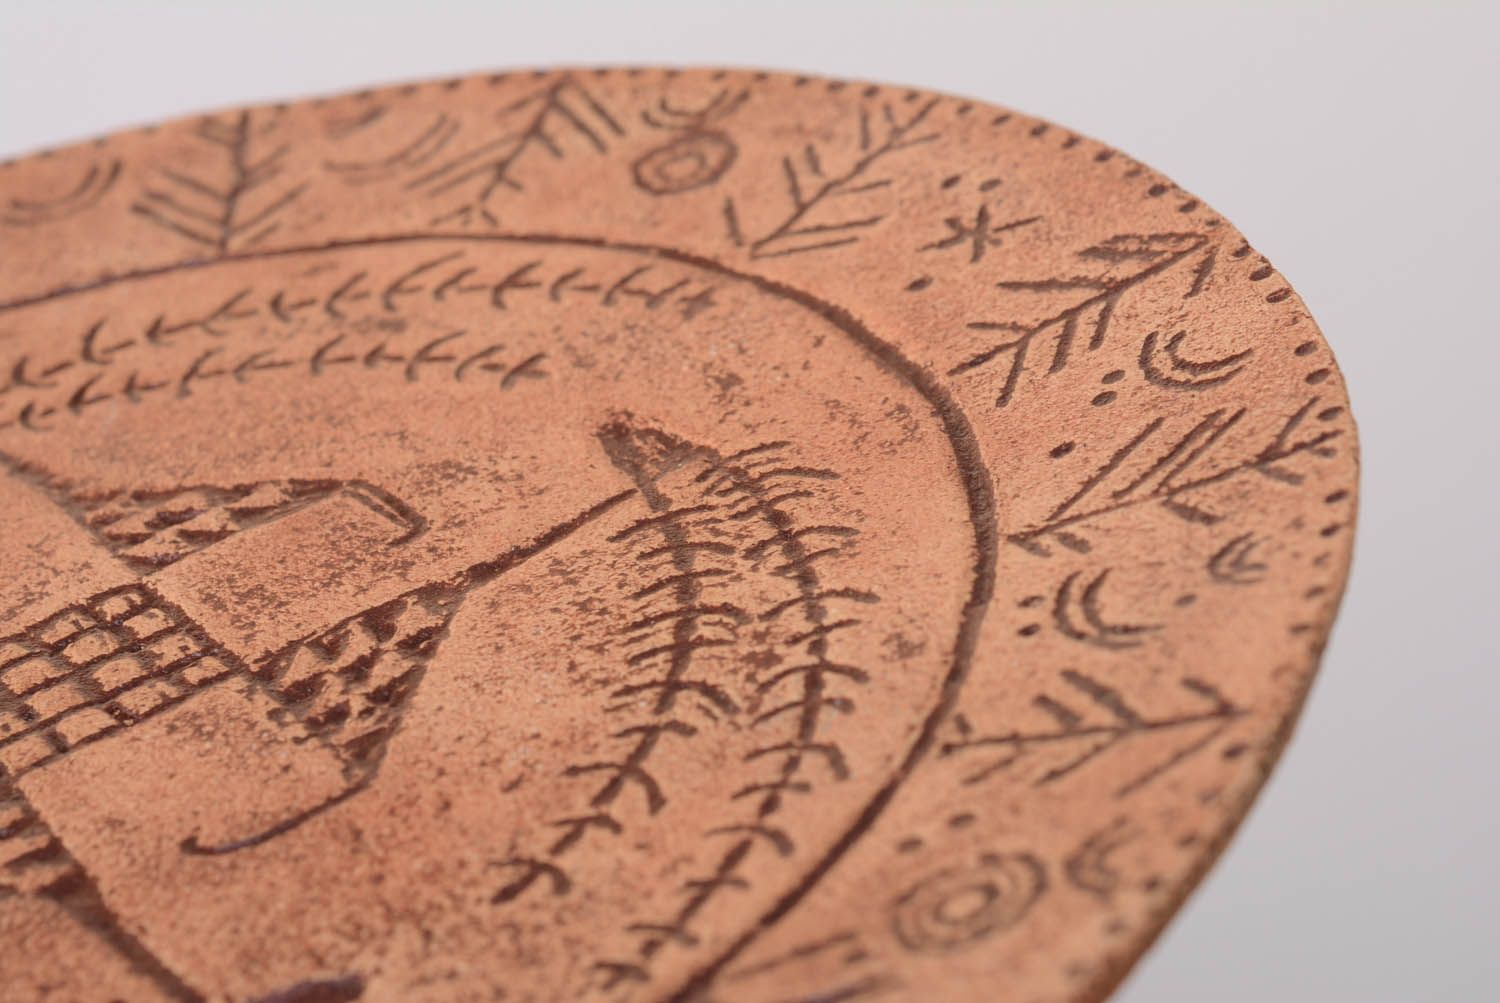 Prato talismã de cerâmica Cervos celestiais feito de argila e pintado com engobes foto 2